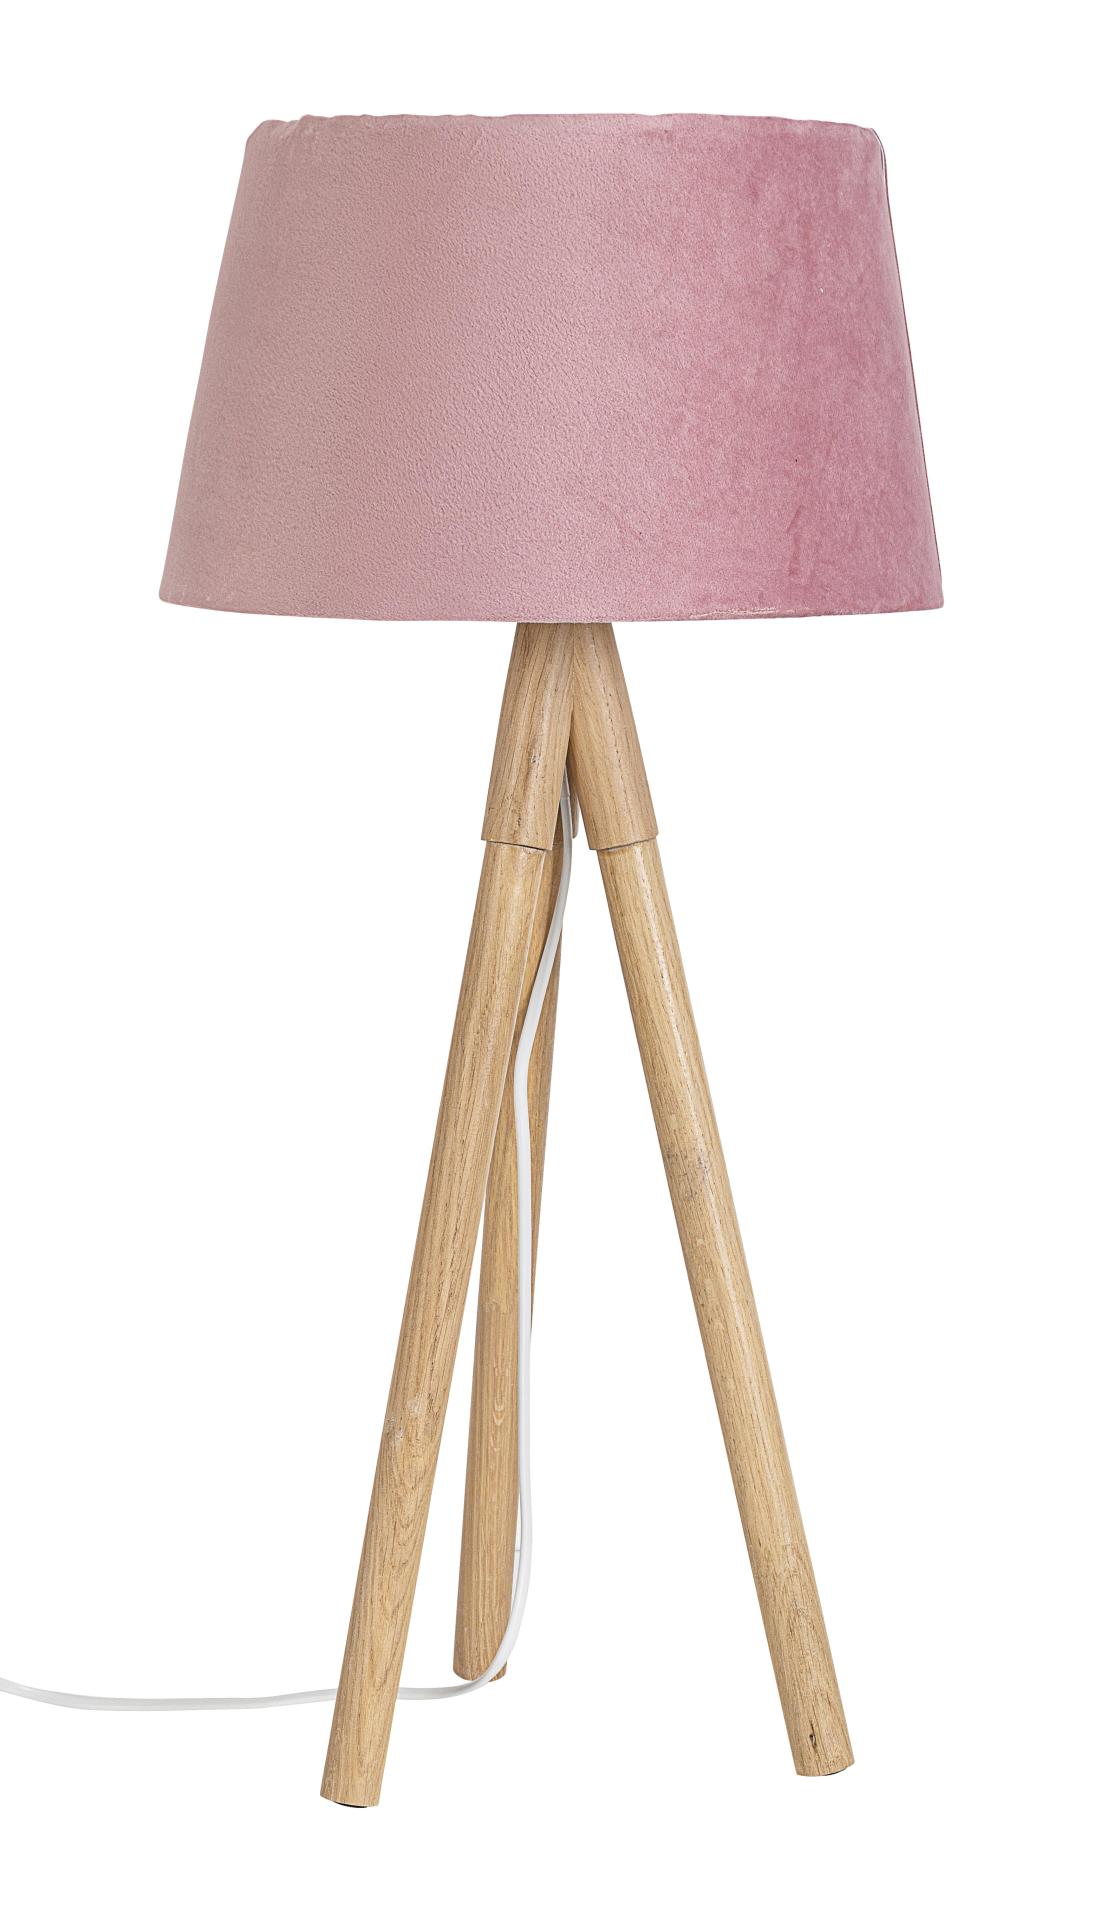 Die Tischleuchte Wallas überzeugt mit ihrem klassischen Design. Gefertigt wurde sie aus Tannenholz, welches einen natürlichen Farbton besitzt. Der Lampenschirm ist aus Samt und hat eine rosa Farbe. Die Lampe besitzt eine Höhe von 69 cm.